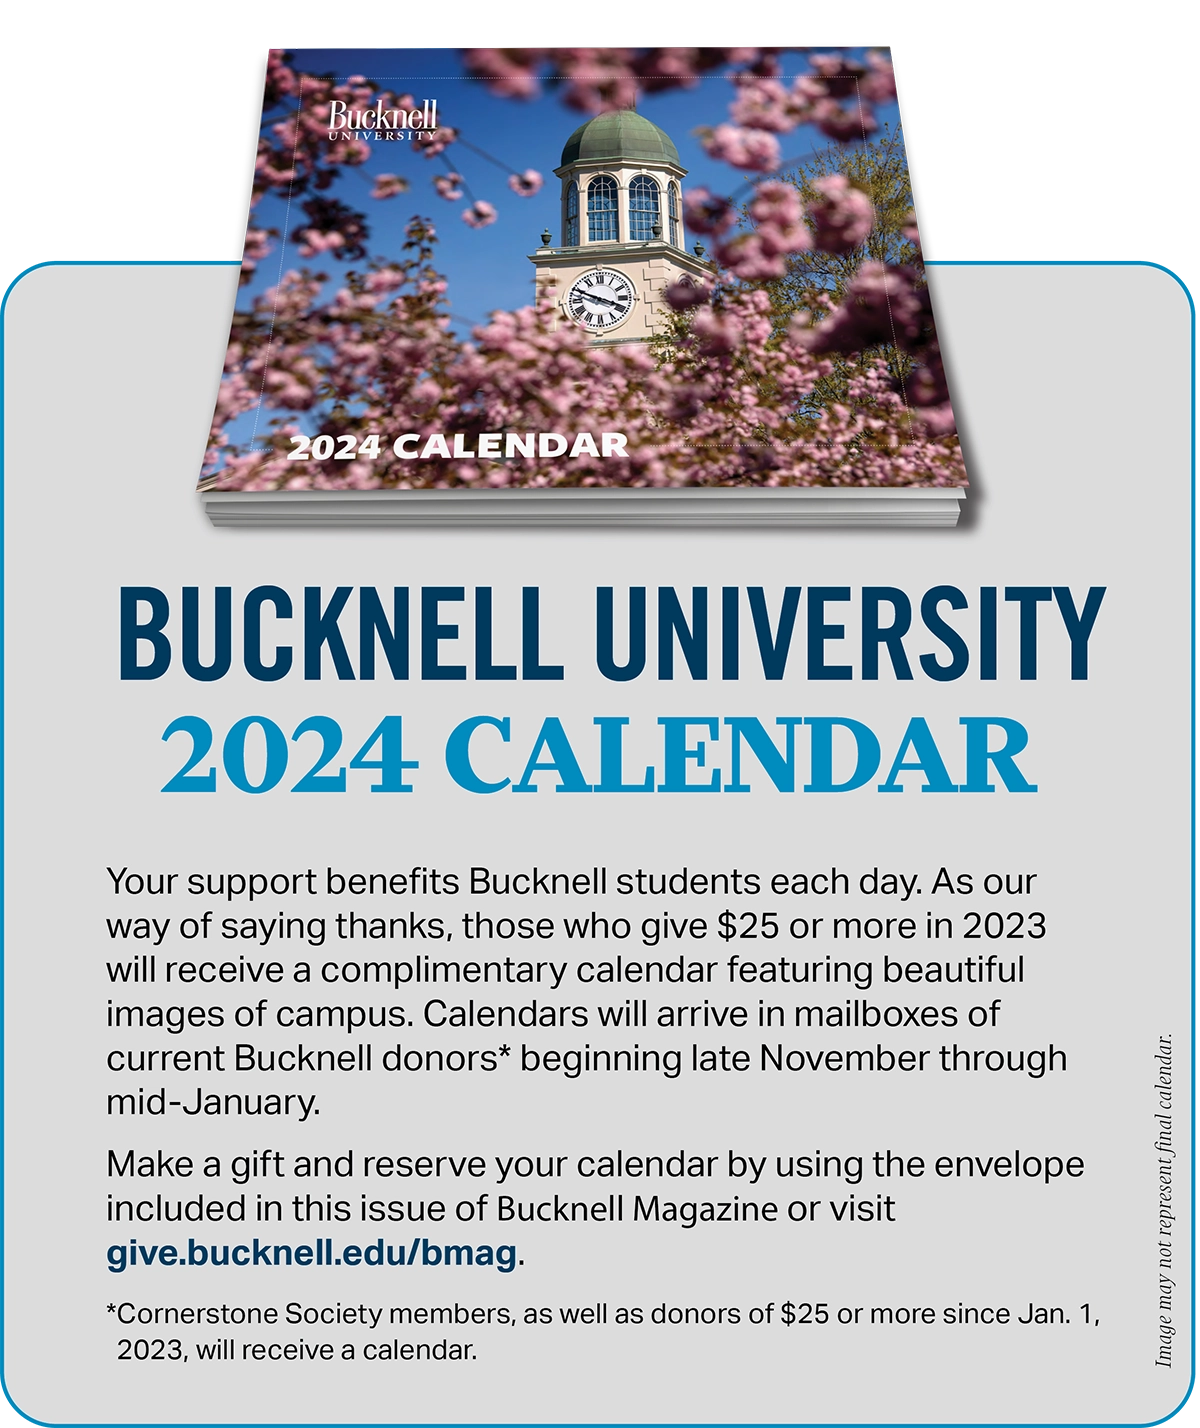 Bucknell 2024 Calendar Advertisement